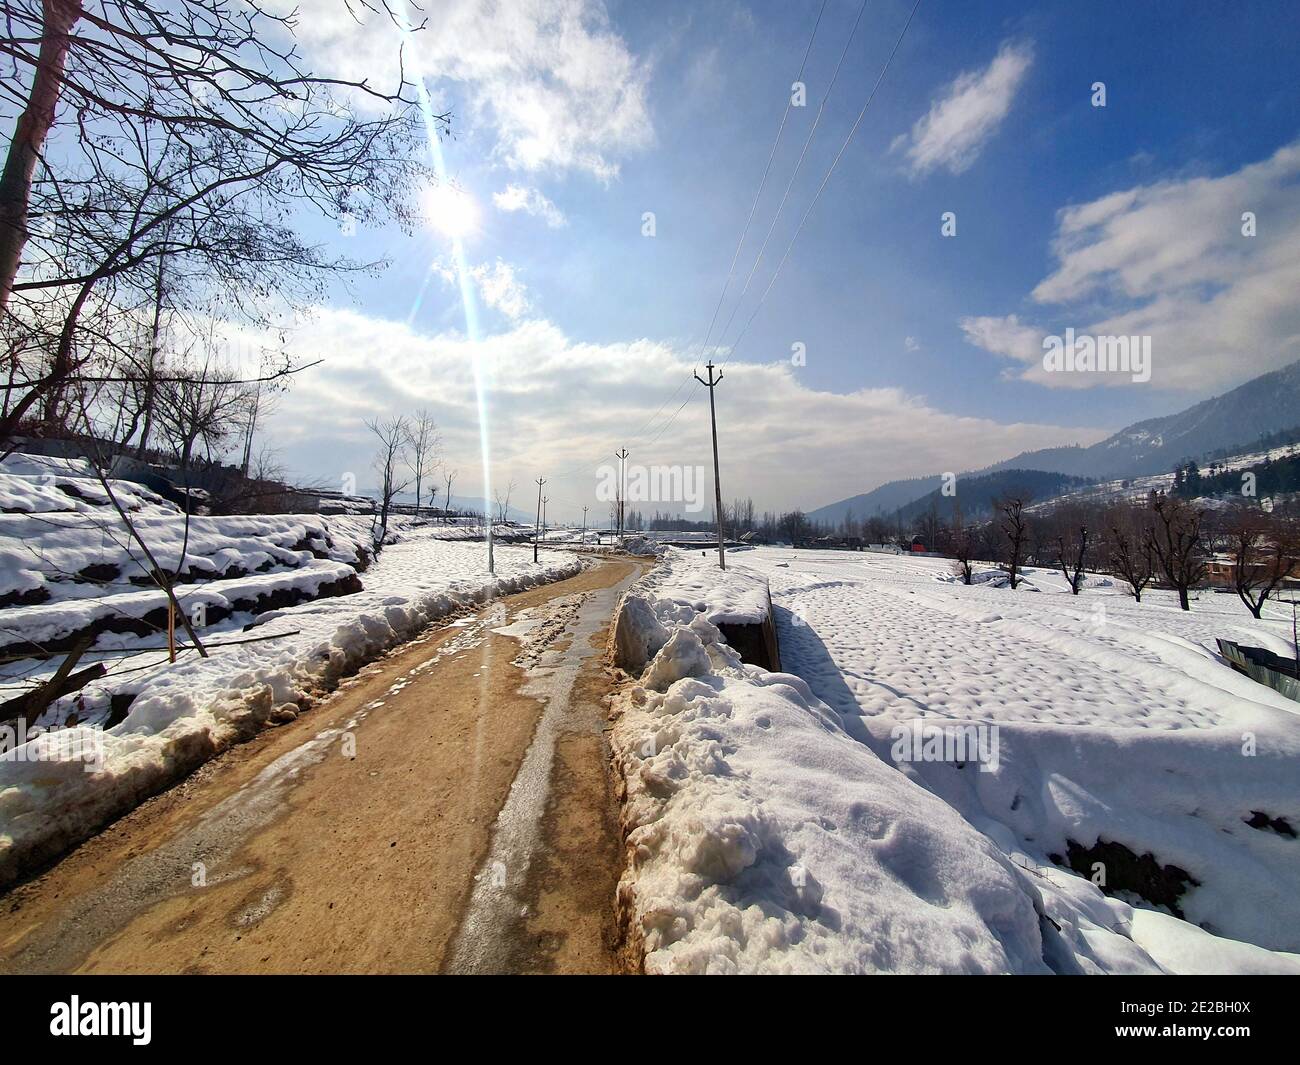 Schneefall in Jammu und Kaschmir ist üblich von Dezember bis Februar, Schnee zieht Touristen und Winterspiele werden auch auf Schnee gespielt. Stockfoto